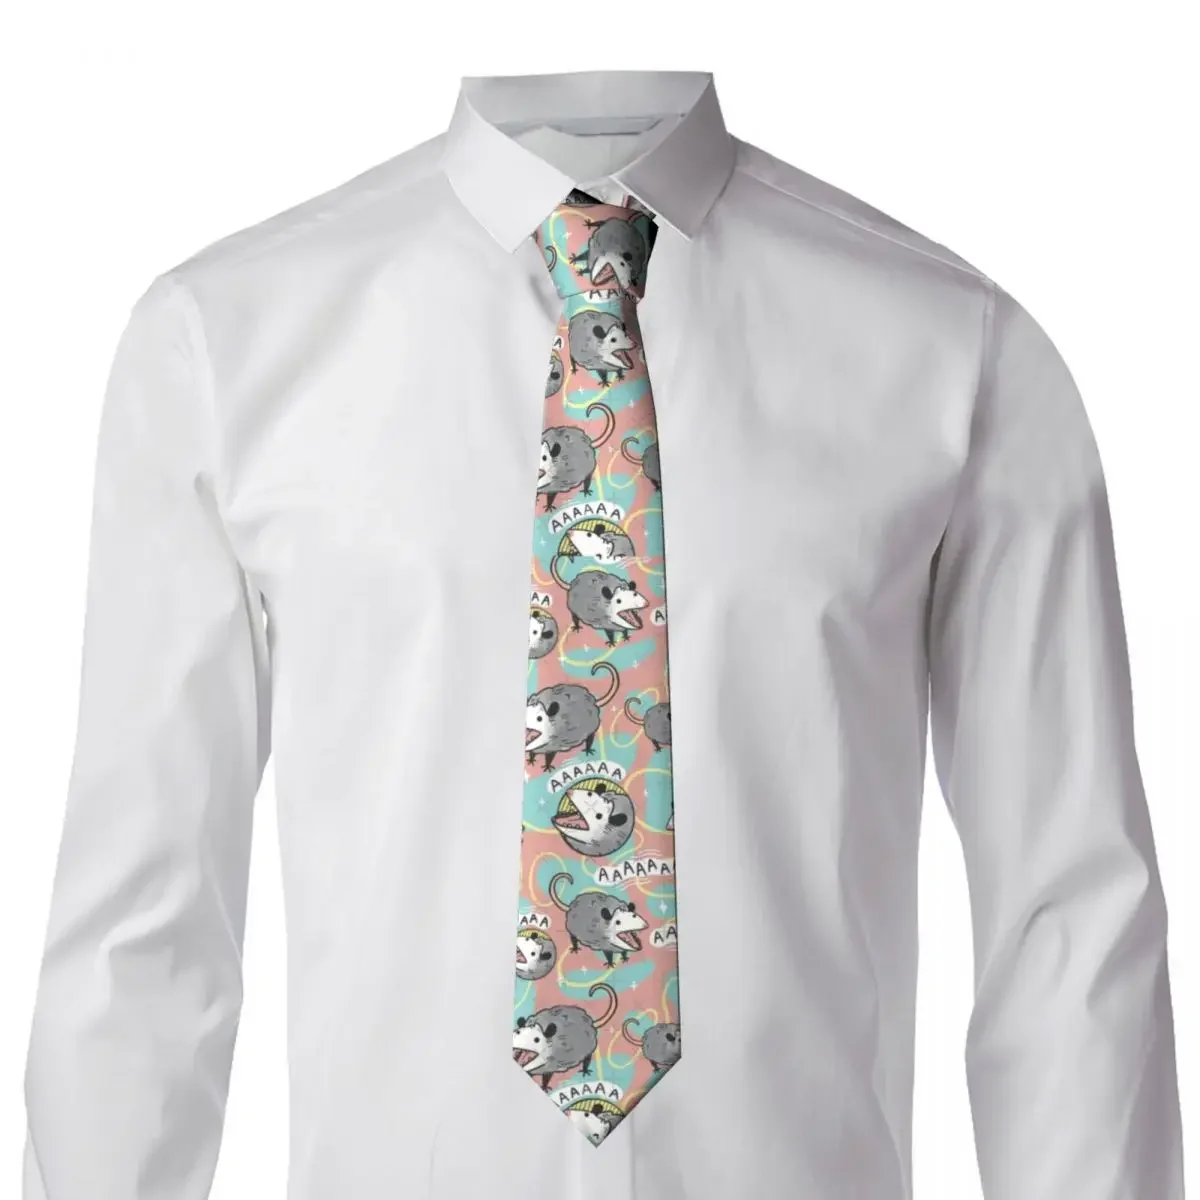 Cartoon Animal Cute Tie Anime Wedding Party Neck Ties Cute Funny Neck Tie For Men Custom DIY Collar Tie Gift